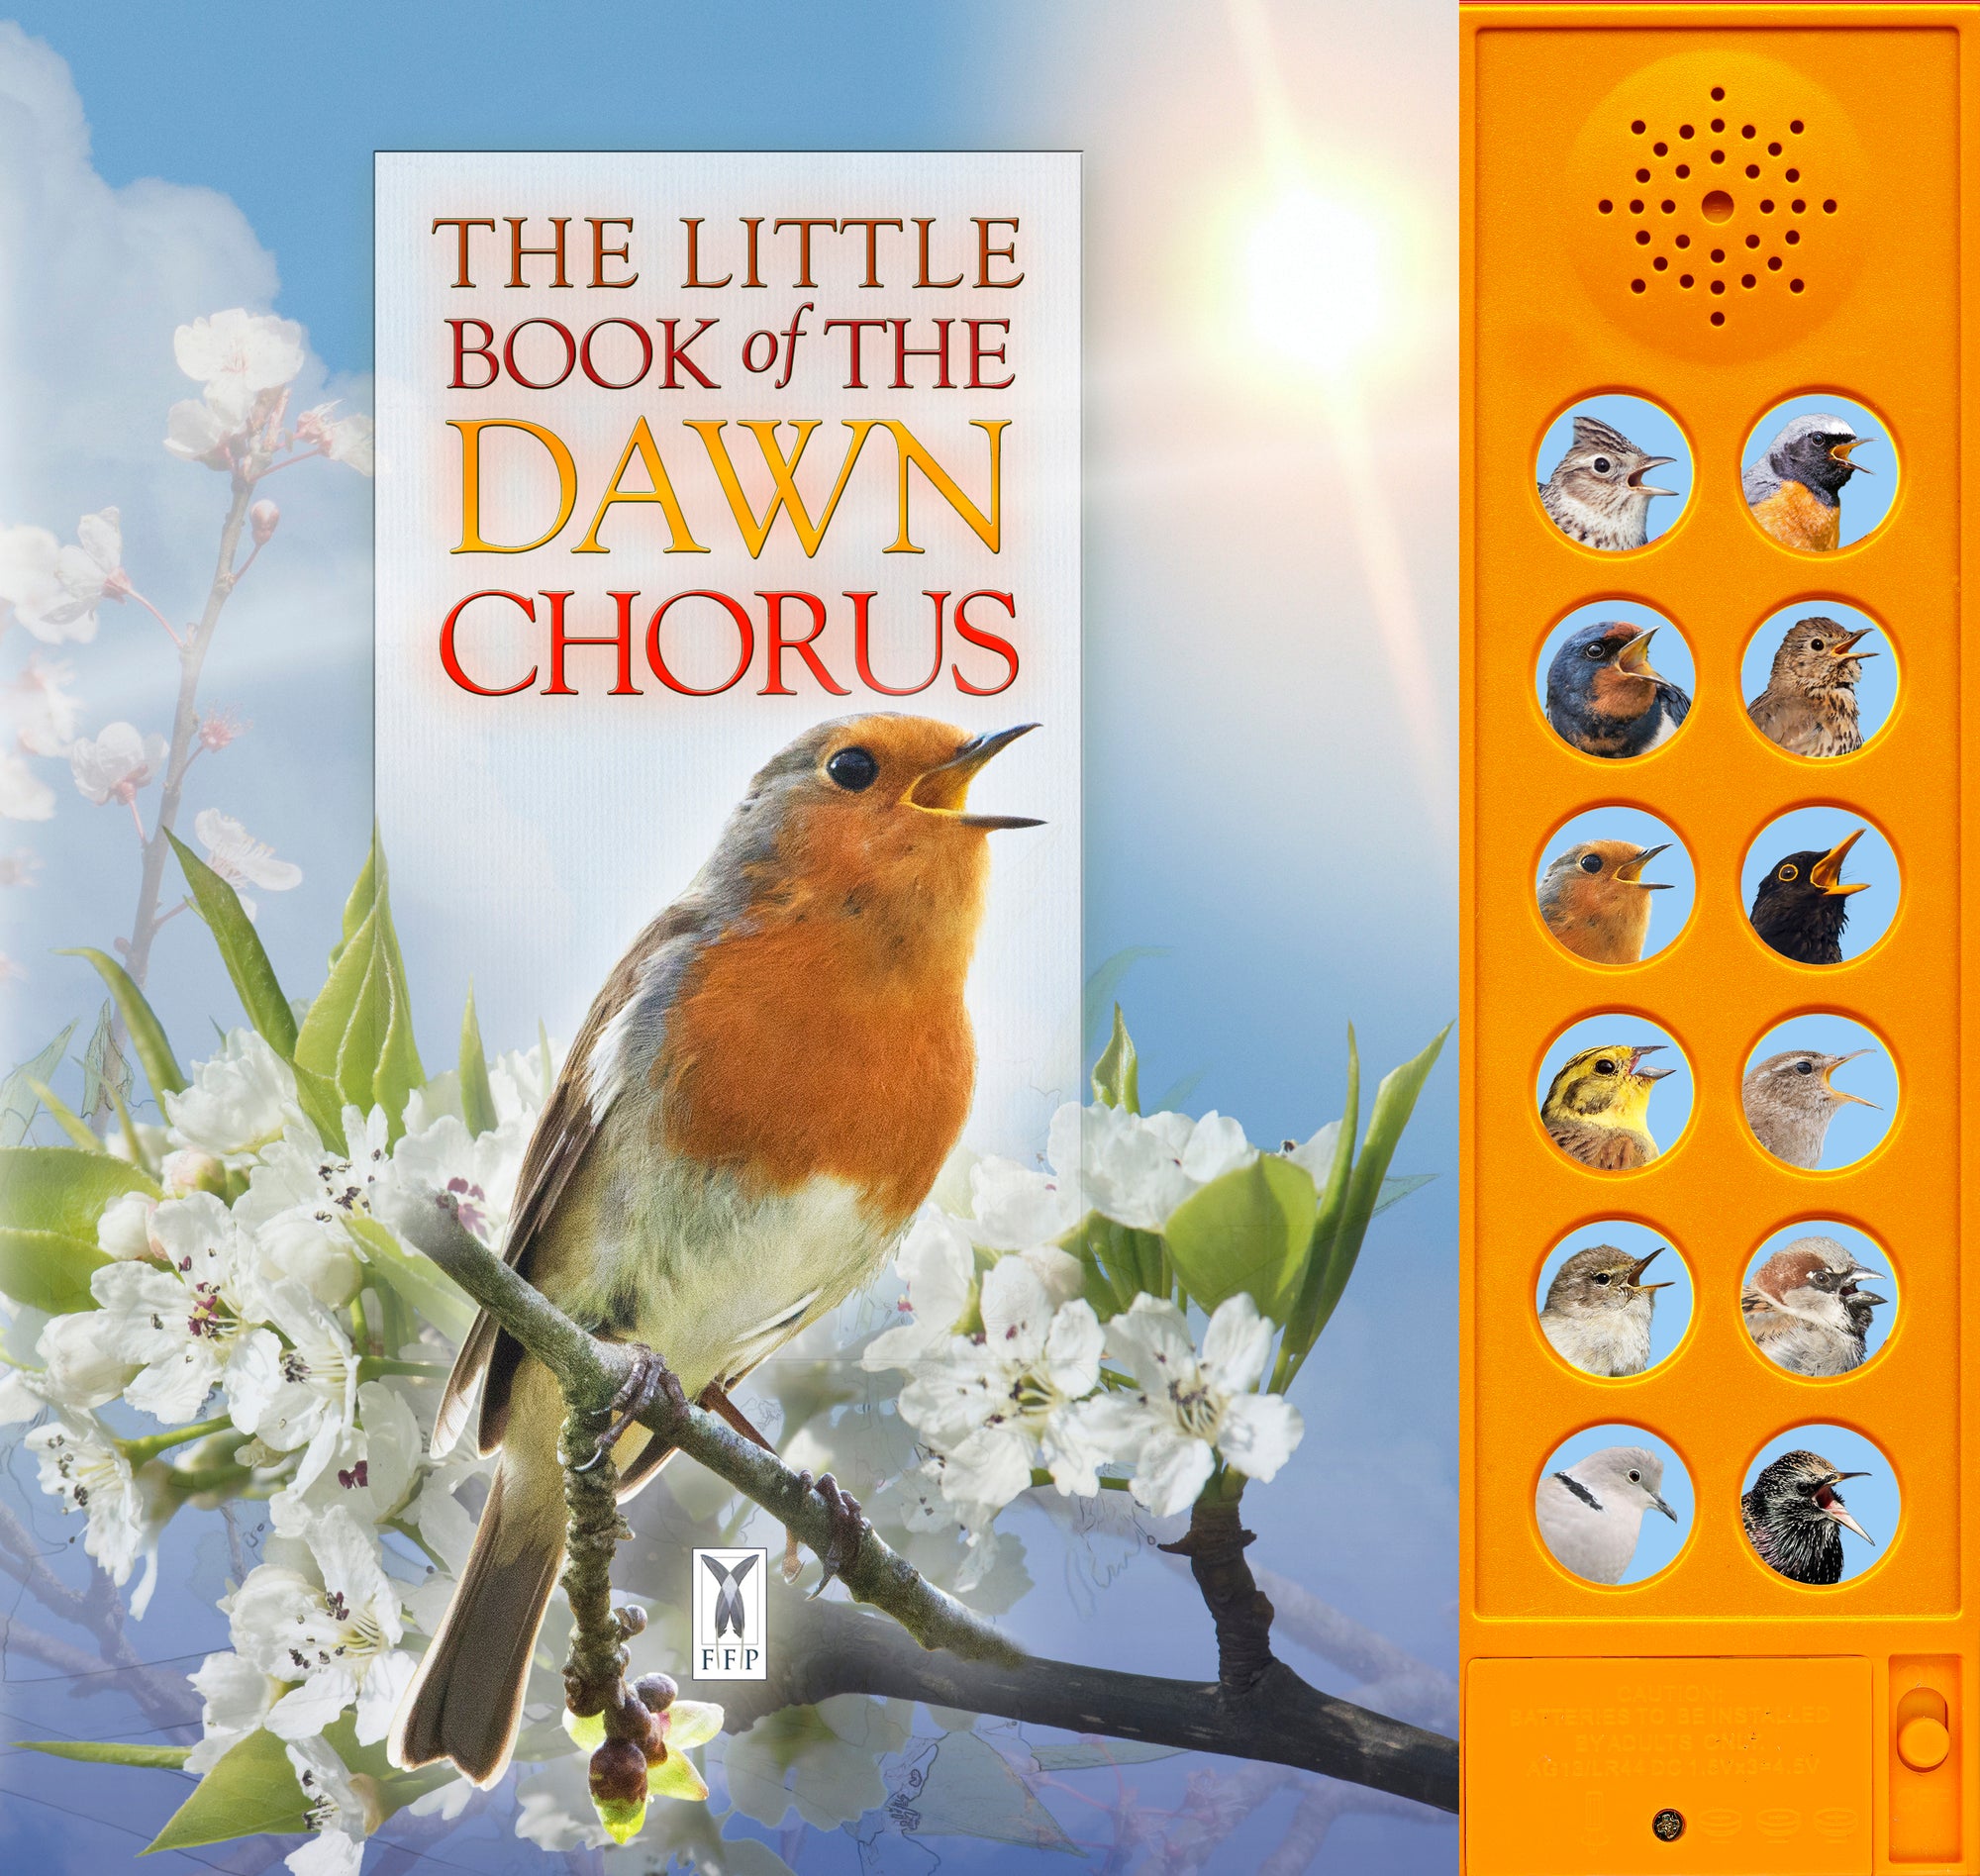 The little book of dawn chorus